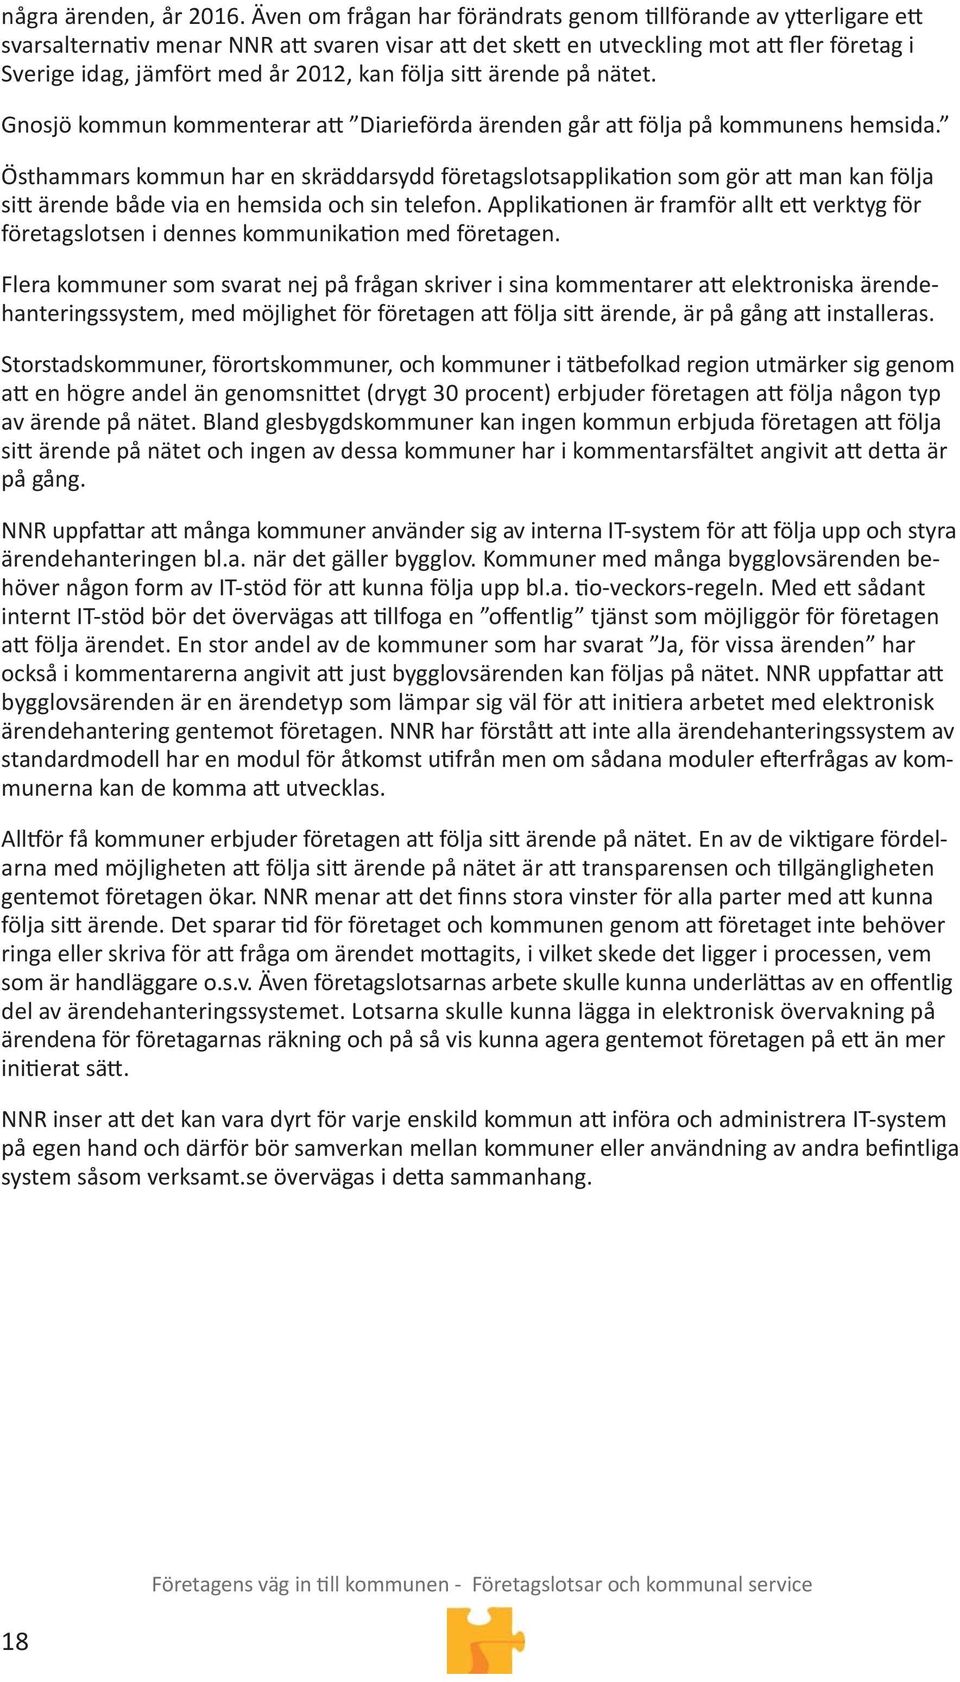 ärende på nätet. Gnosjö kommun kommenterar a Diarieförda ärenden går a följa på kommunens hemsida.